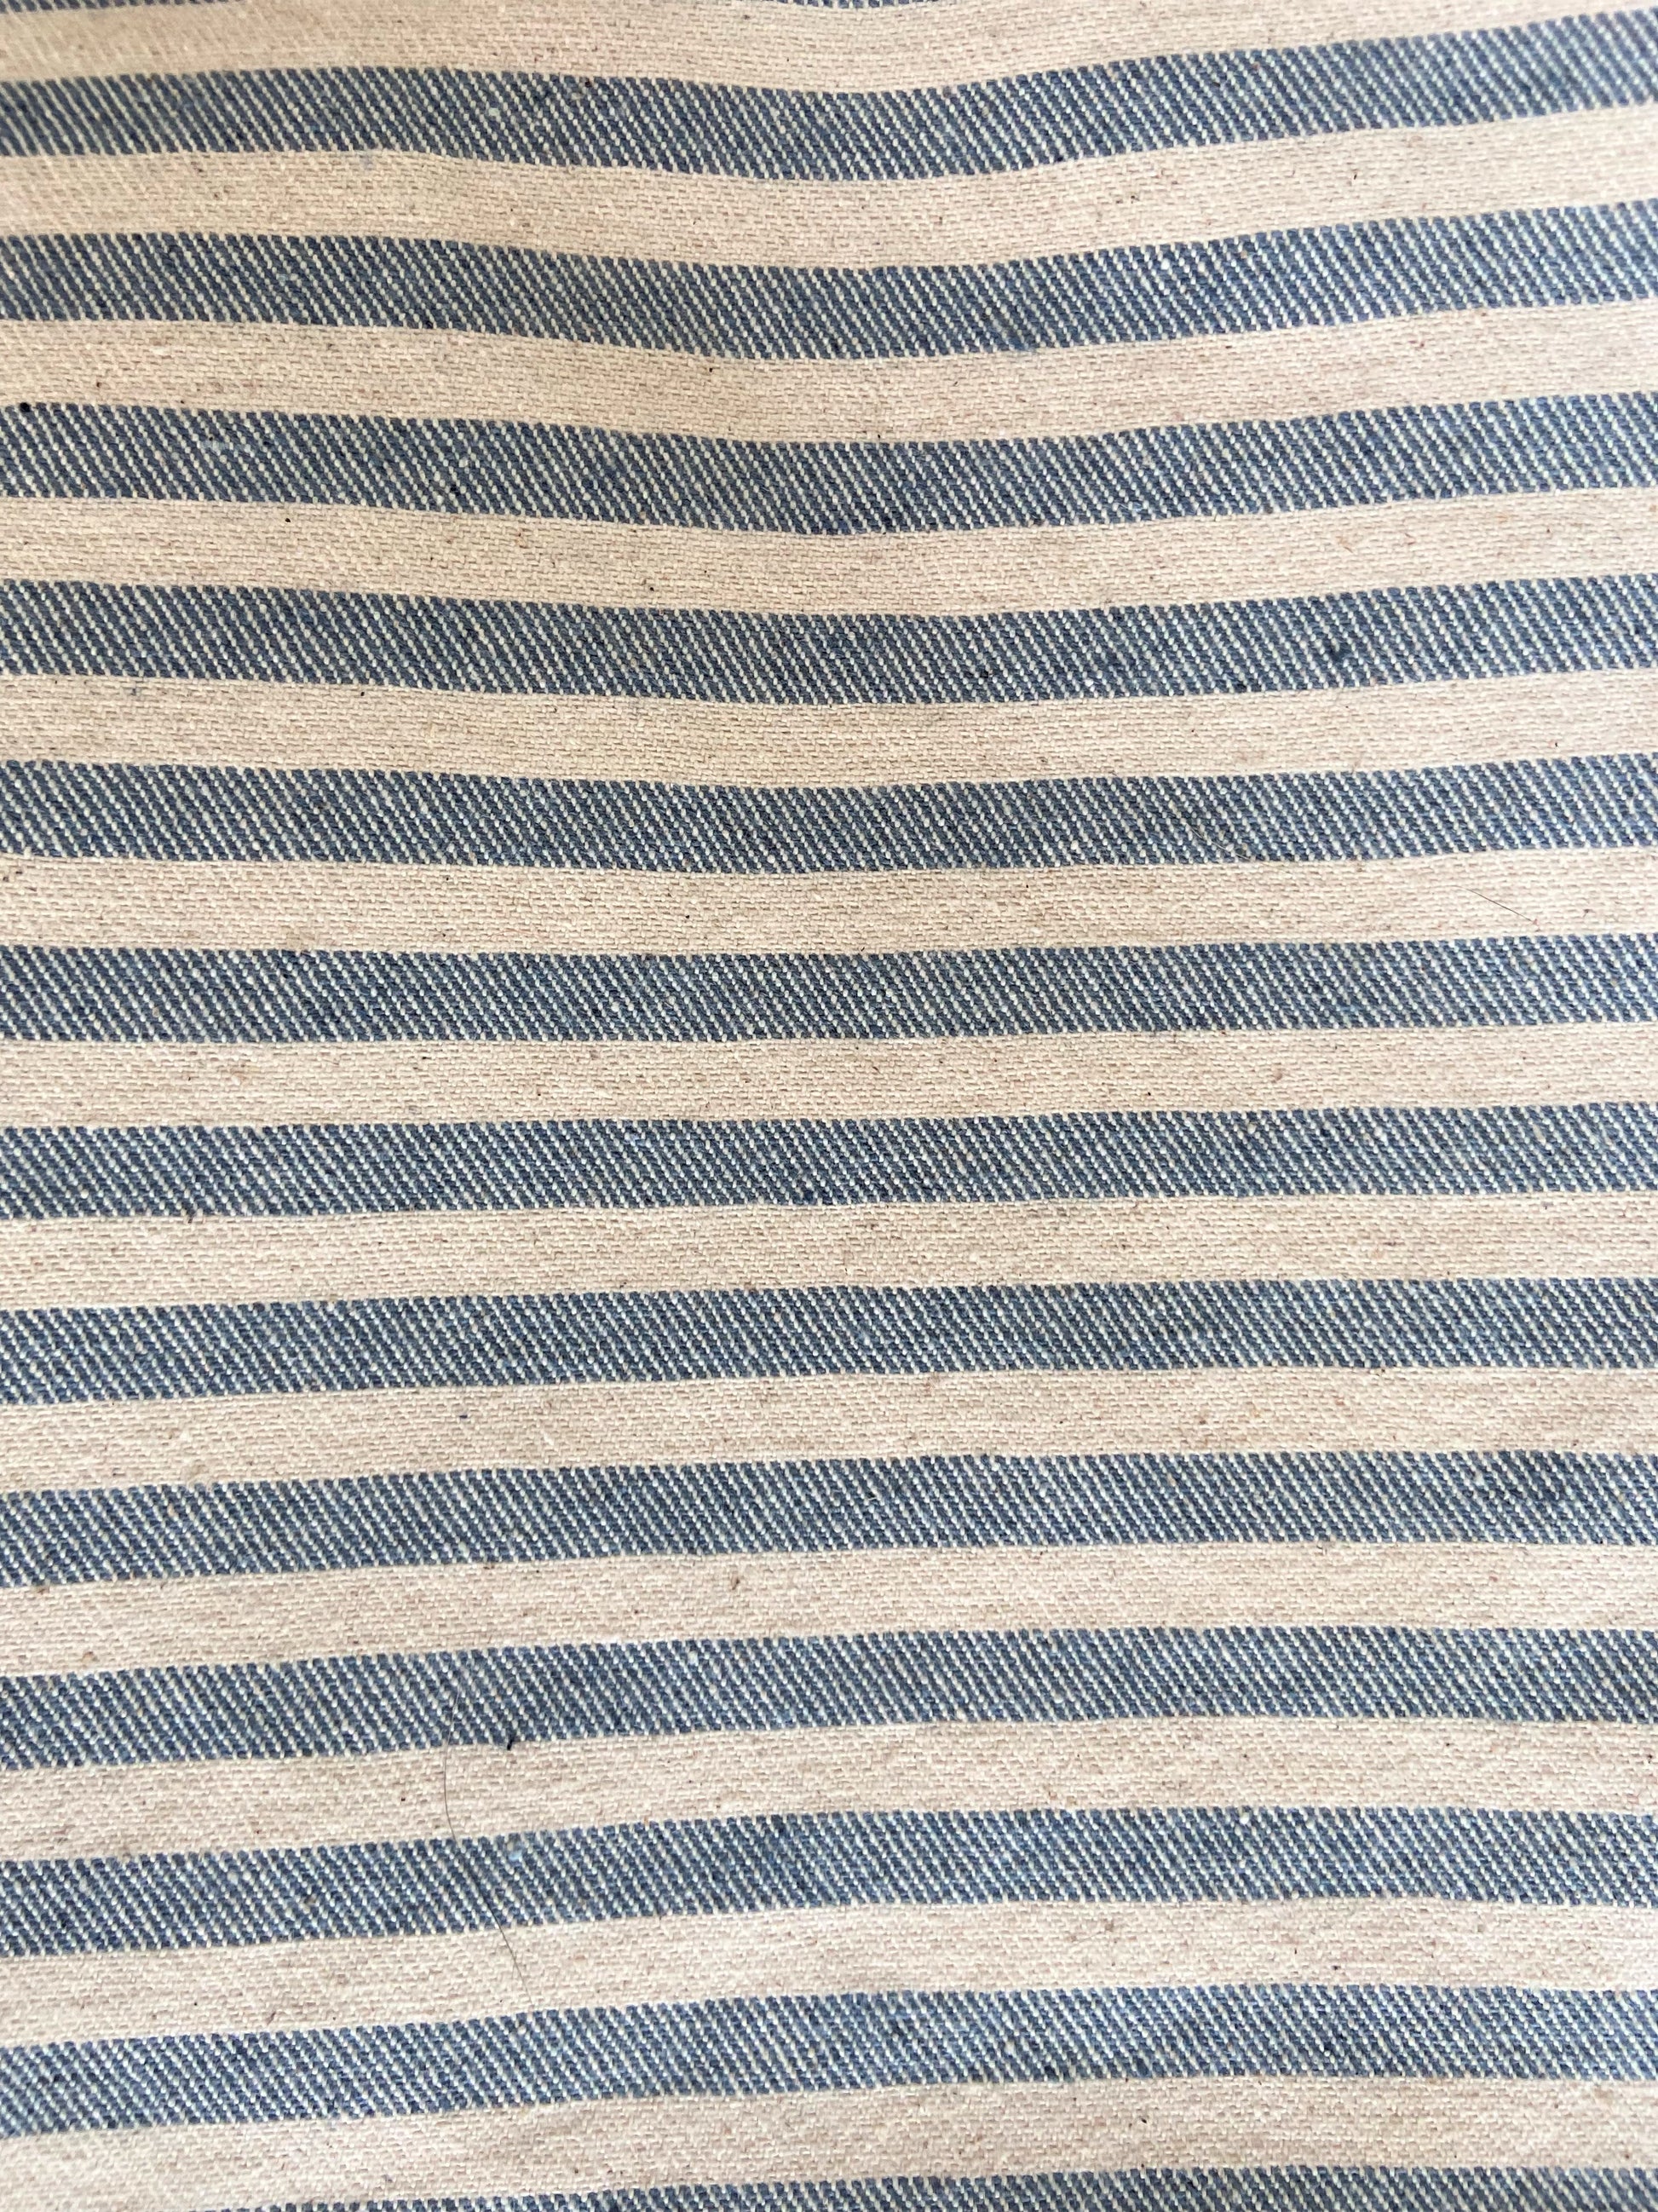 coastal beach blue striped pillow